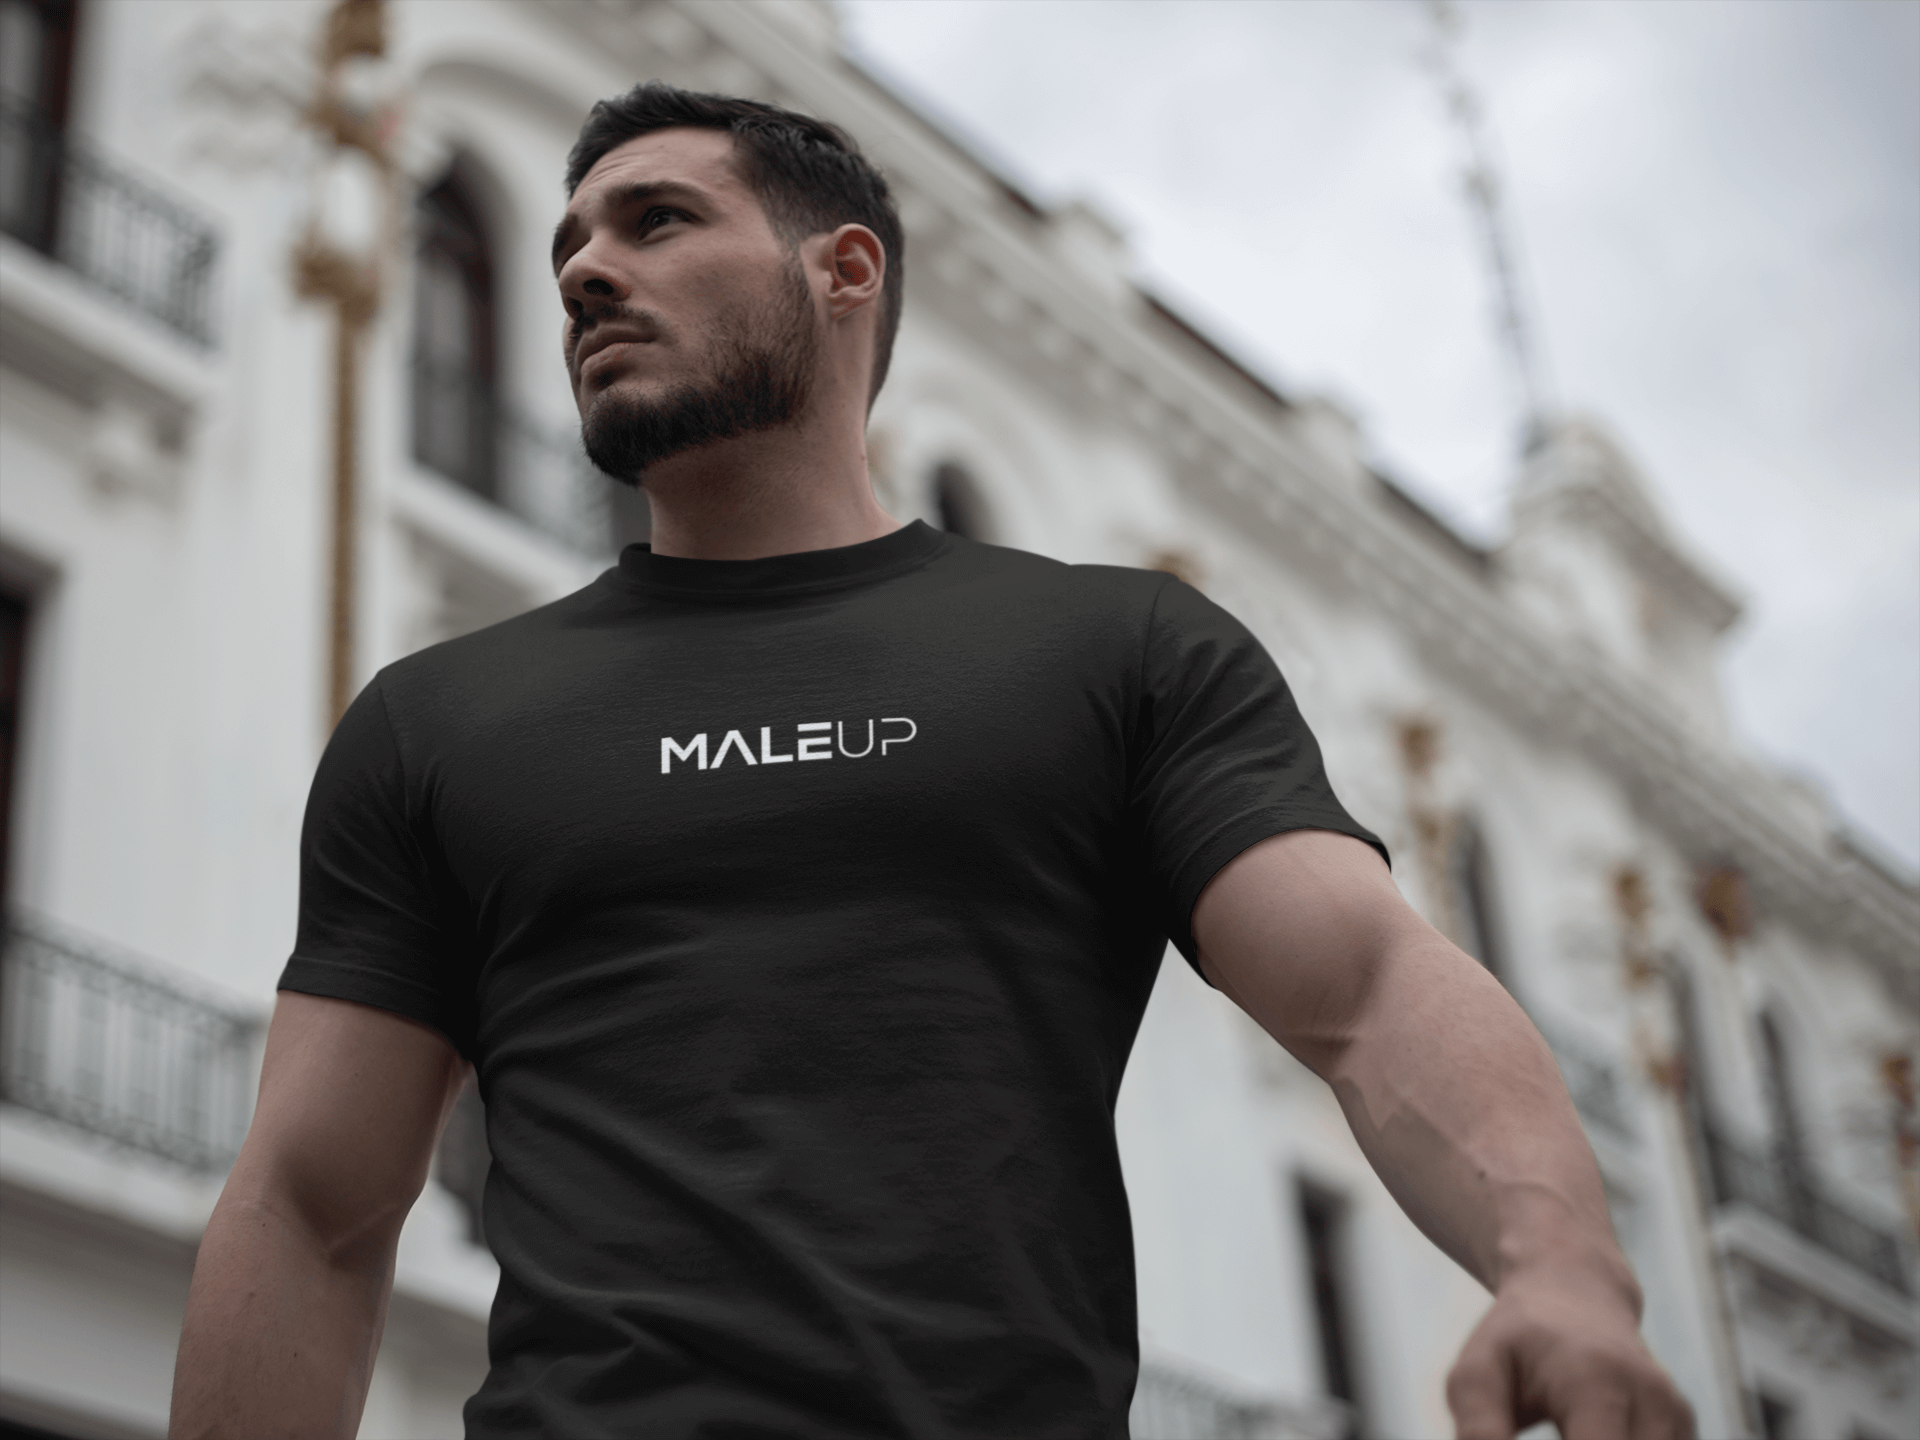 Limited MaleUp T-Shirt in schwarz